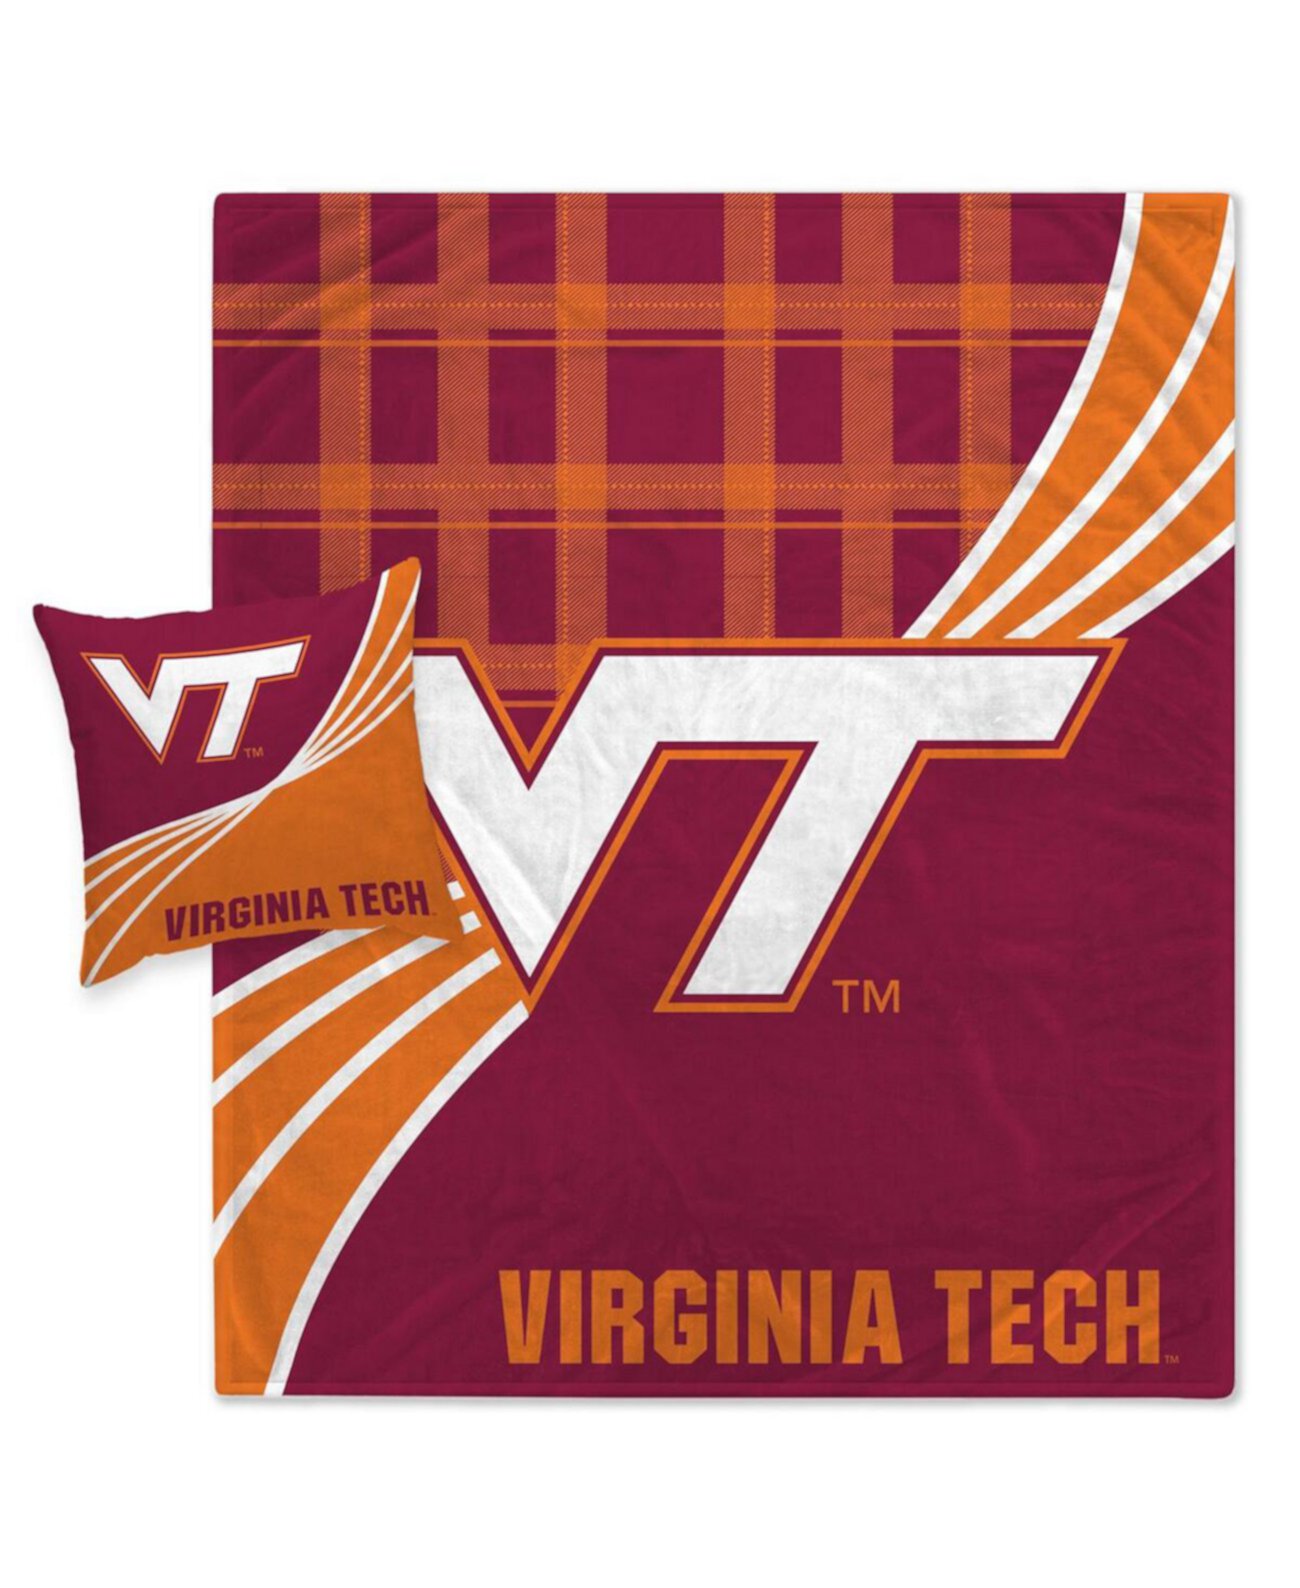 Virginia Tech Hokies Комбинированный комплект из фланелевого флисового одеяла и подушек в клетку Pegasus Home Fashions